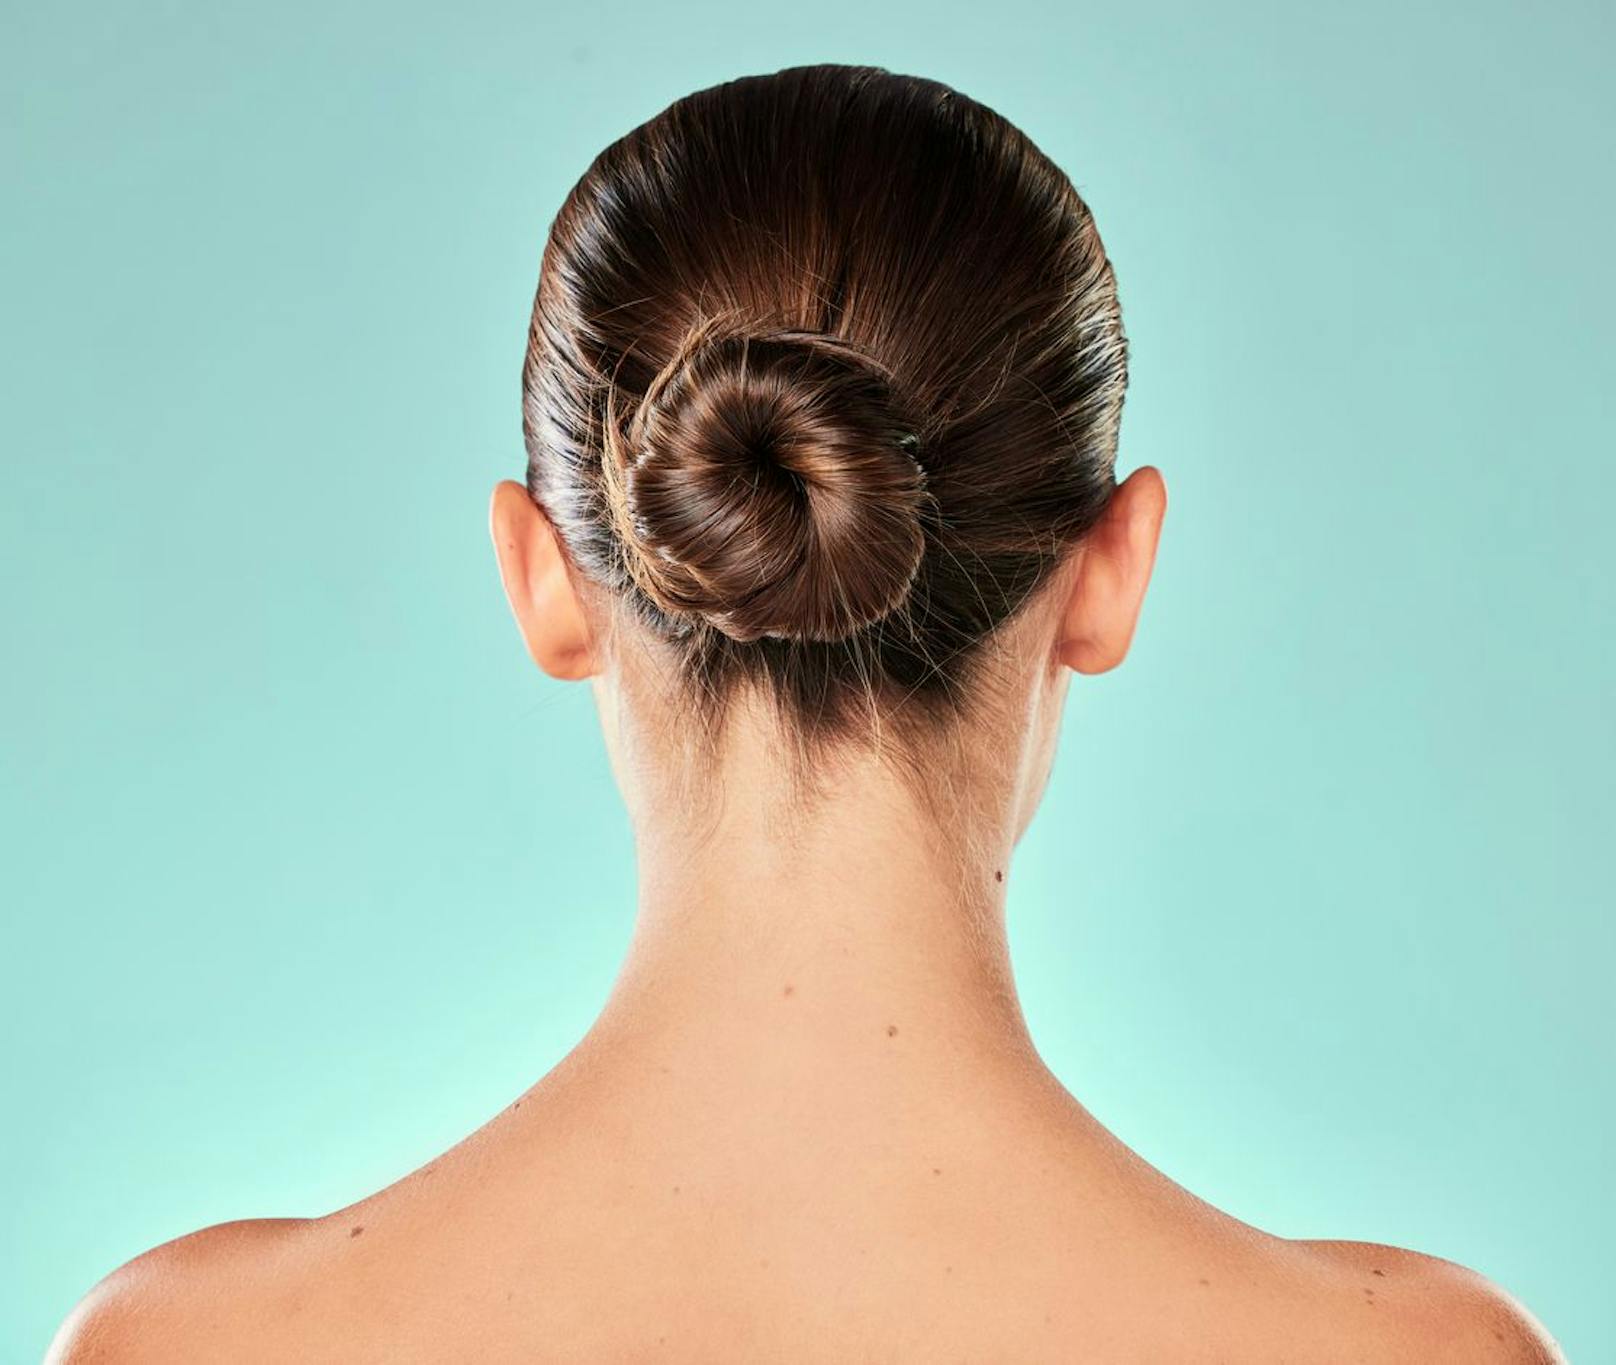 Eine weitere beliebte Frisur, die deine Haare allerdings nur ausdünnt wäre der typische Ballerina-Dutt. Ist er zu streng, führt er nicht nur zu ungewollten Kopfschmerzen, sondern auch zu einem möglichen Haarausfall. Setze lieber auf einen lockeren "Messy-Bun" für unterwegs. 